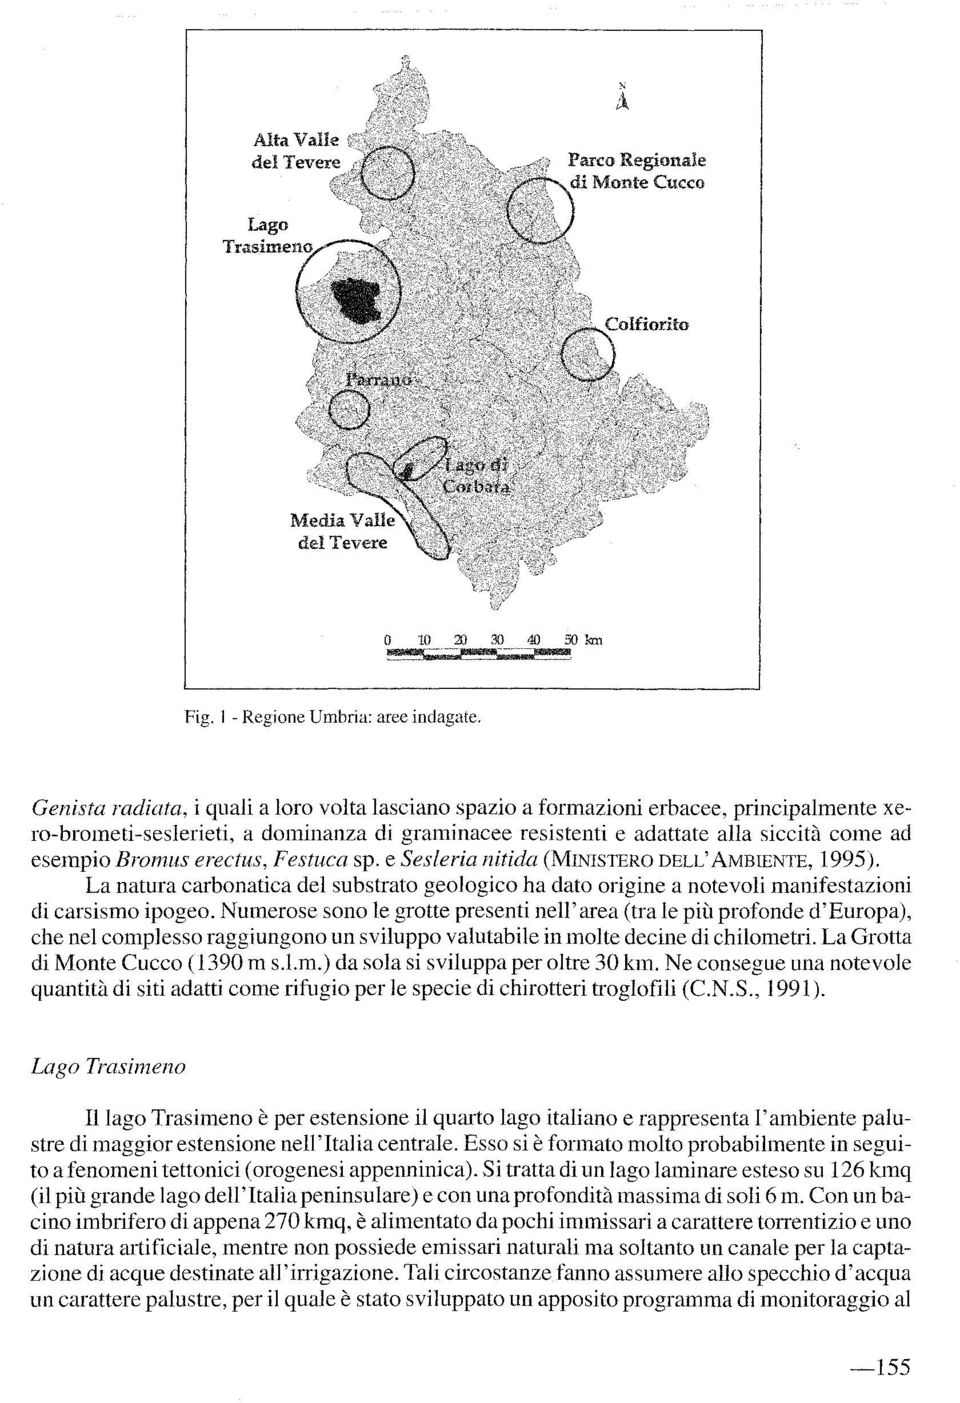 erectus, Festuca sp. e Sesleria nitida (MINISTERO DELL'AMBIENTE, 1995). La natura carbonatica del substrato geologico ha dato origine a notevoli manifestazioni di carsismo ipogeo.